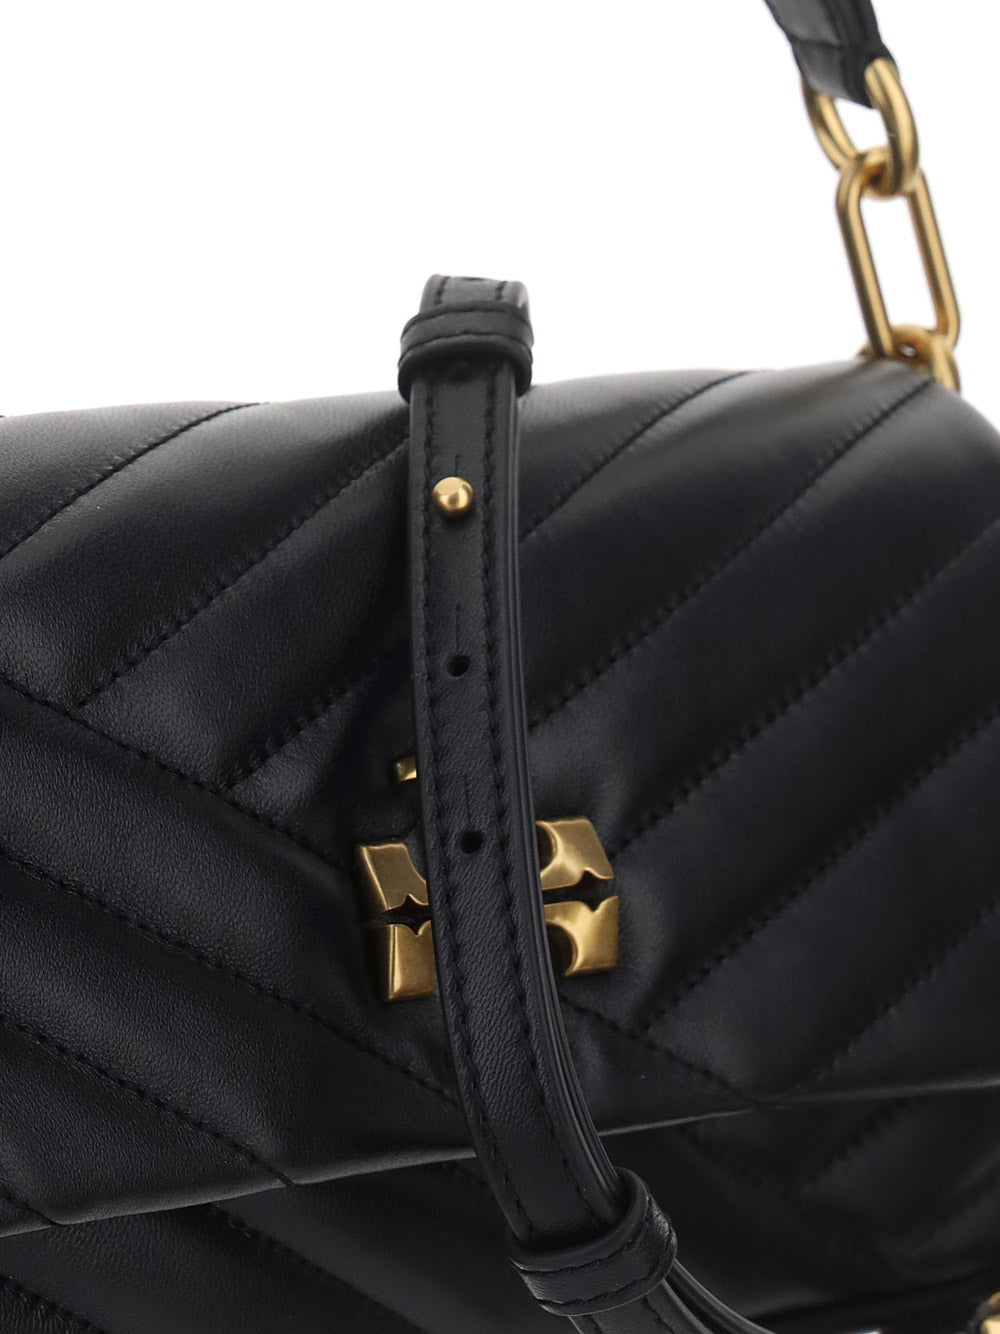 Kira Leather Bag - Black